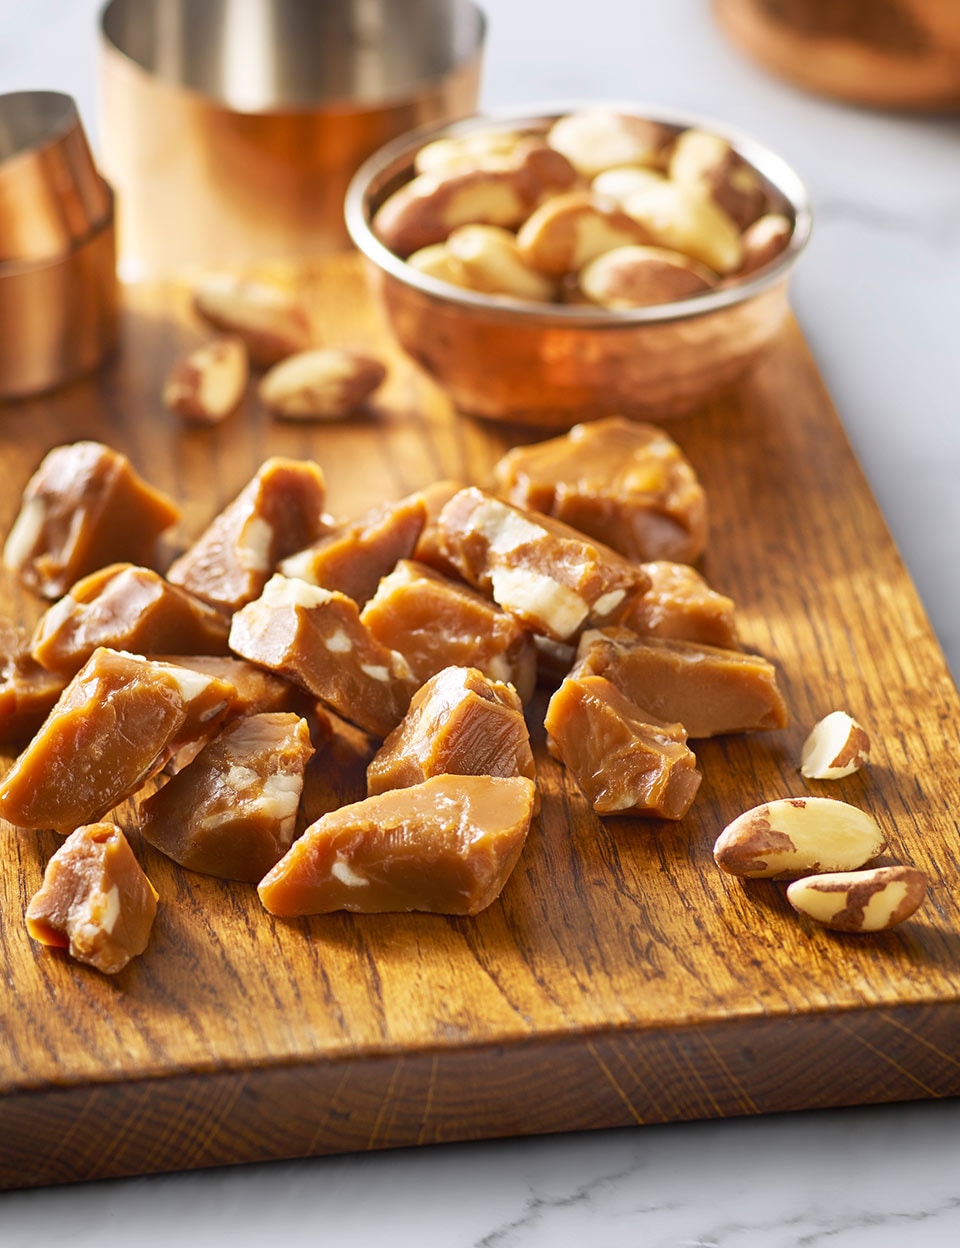 Chopped brazil nut toffee on board